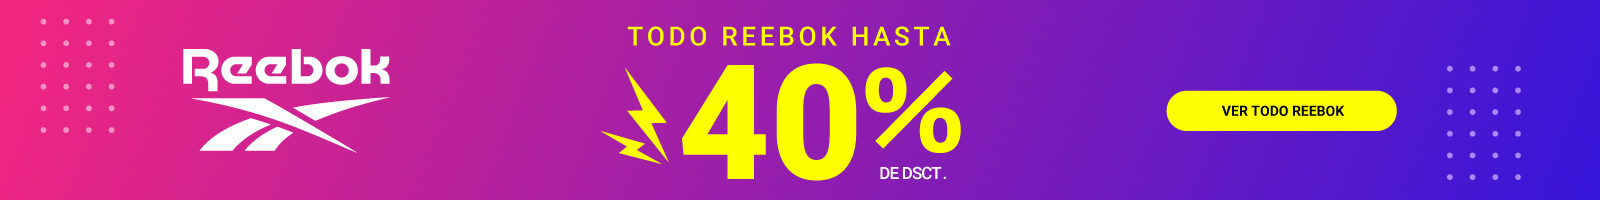 Todo Reebok hasta con 40% de descuento